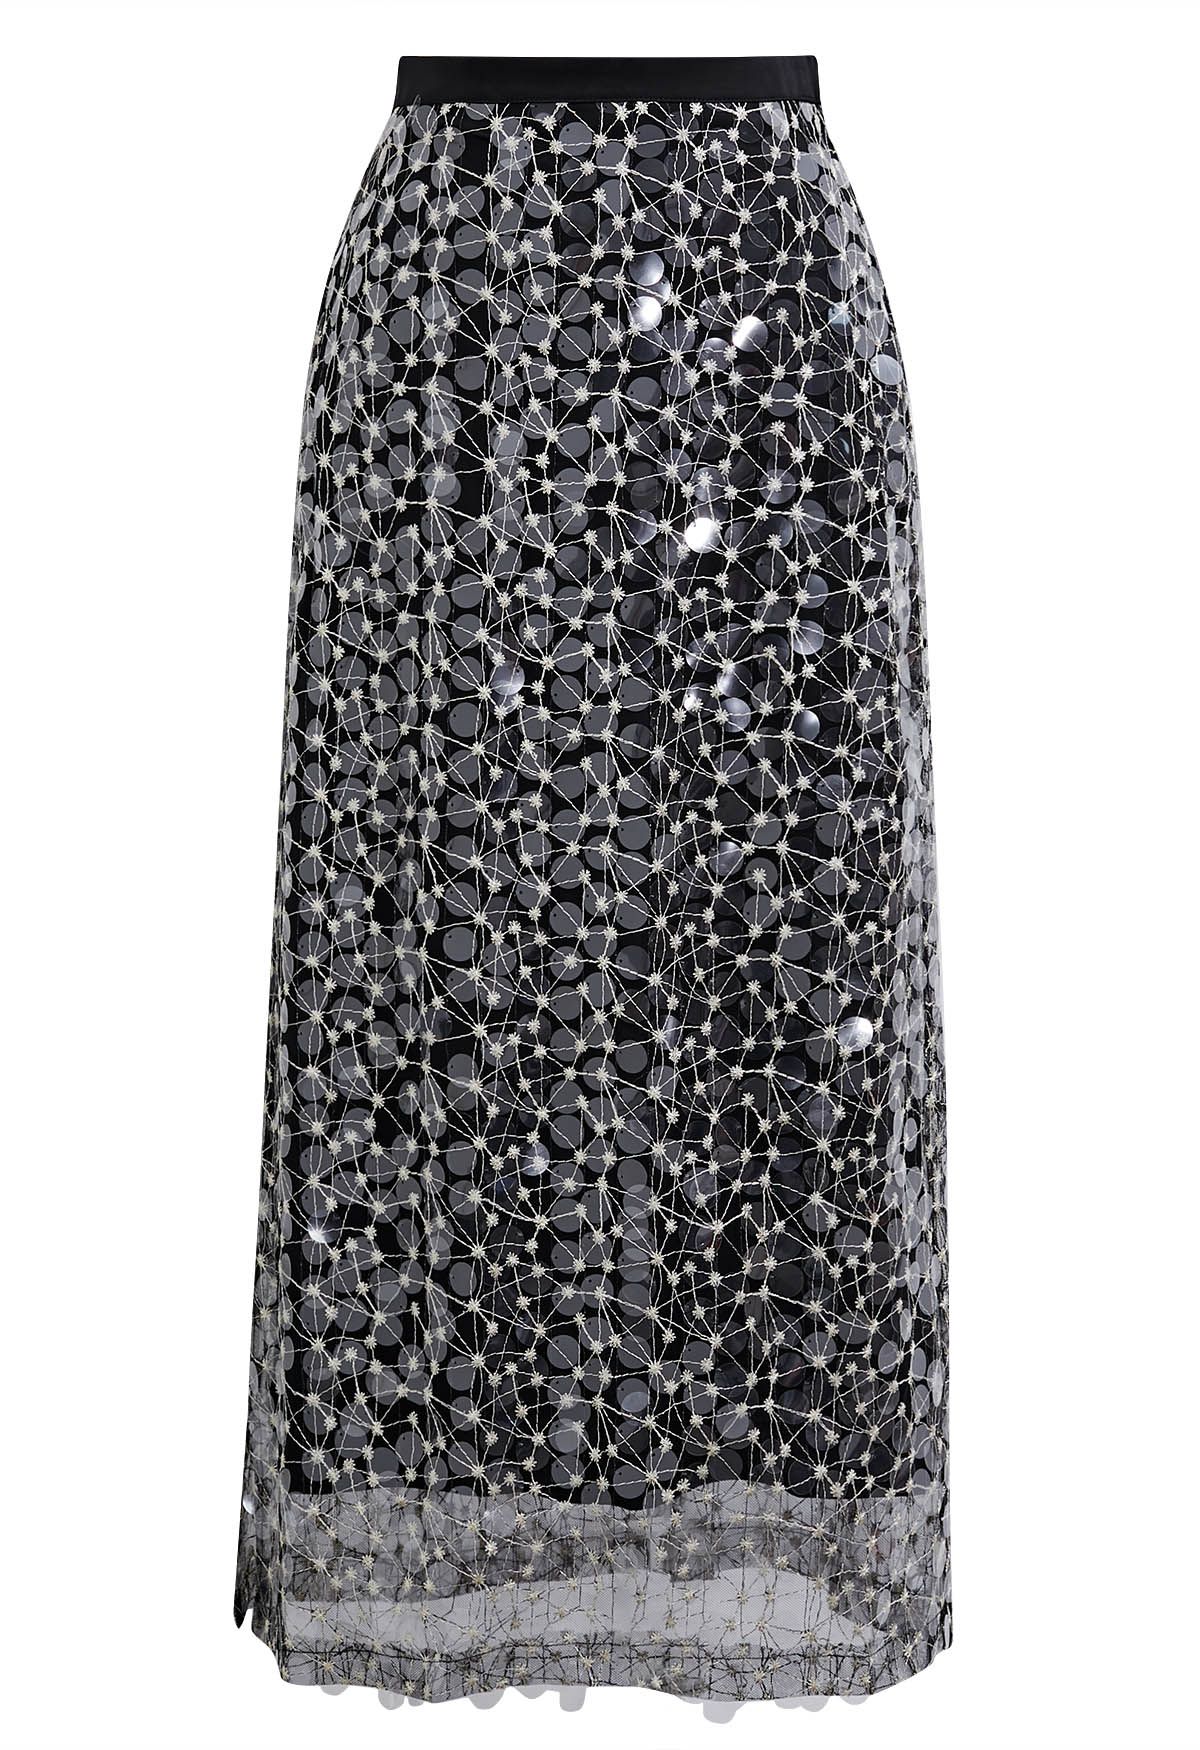 Falda de malla bordada con lentejuelas brillantes en negro